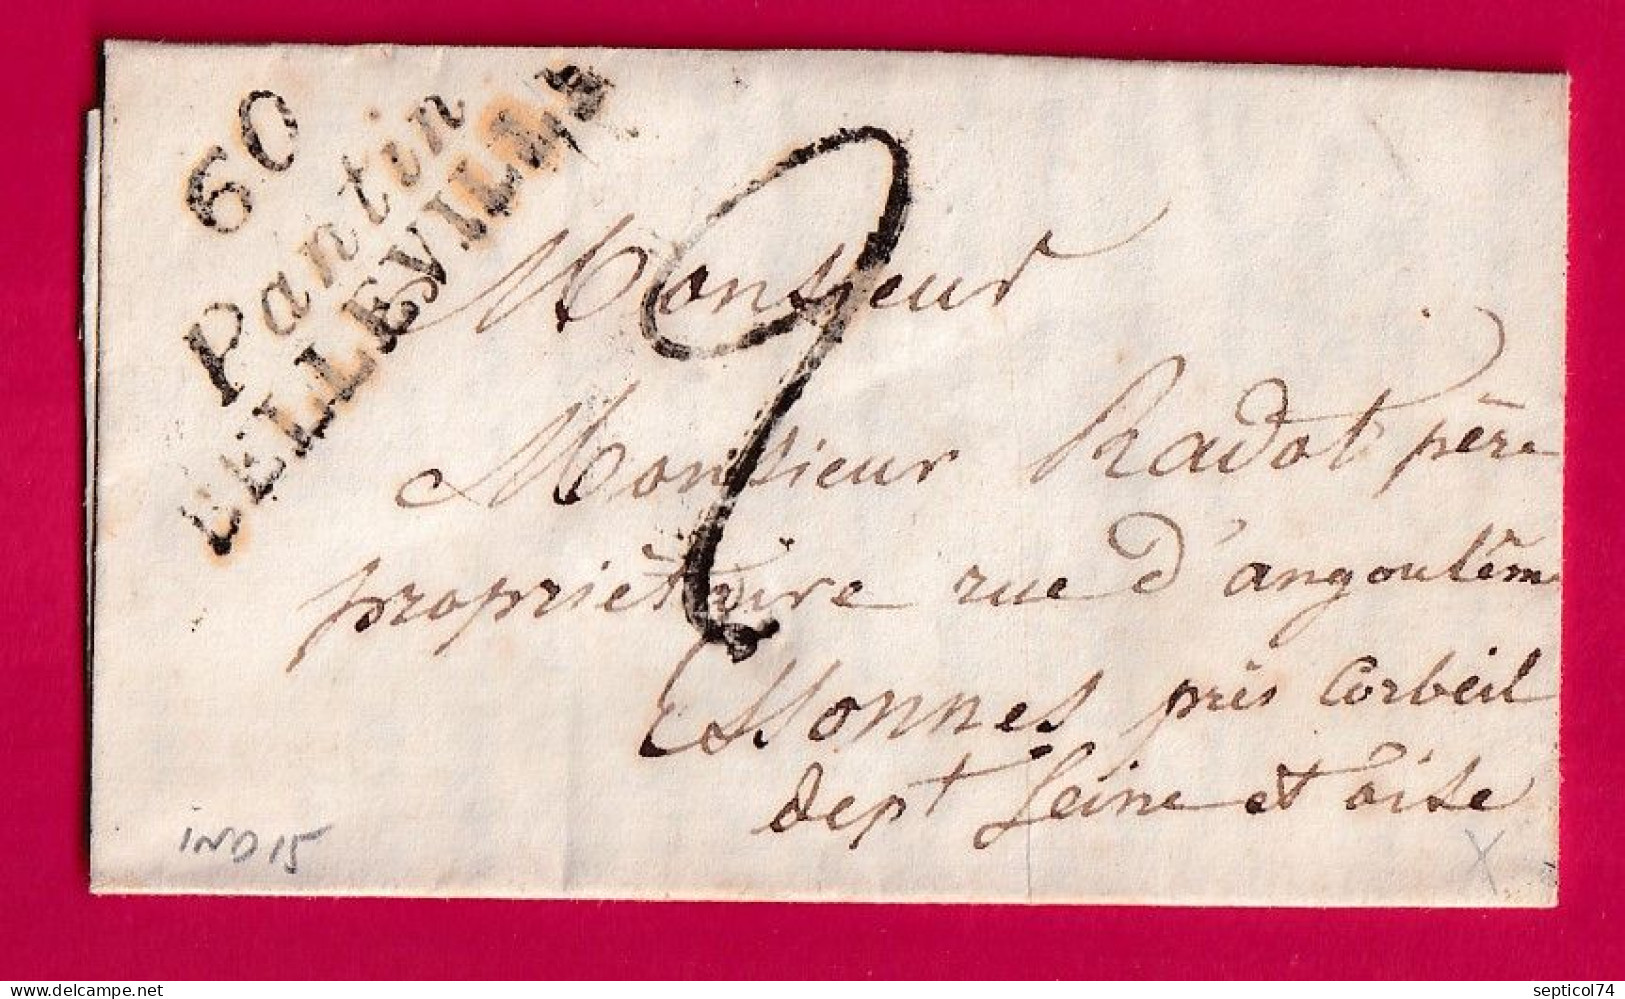 DOUBLE CURSIVE 60 PANTIN BELLEILLE SEINE POUR ESSONNES SEINE ET OISE 1839 INDICE 15 LETTRE - 1801-1848: Precursors XIX